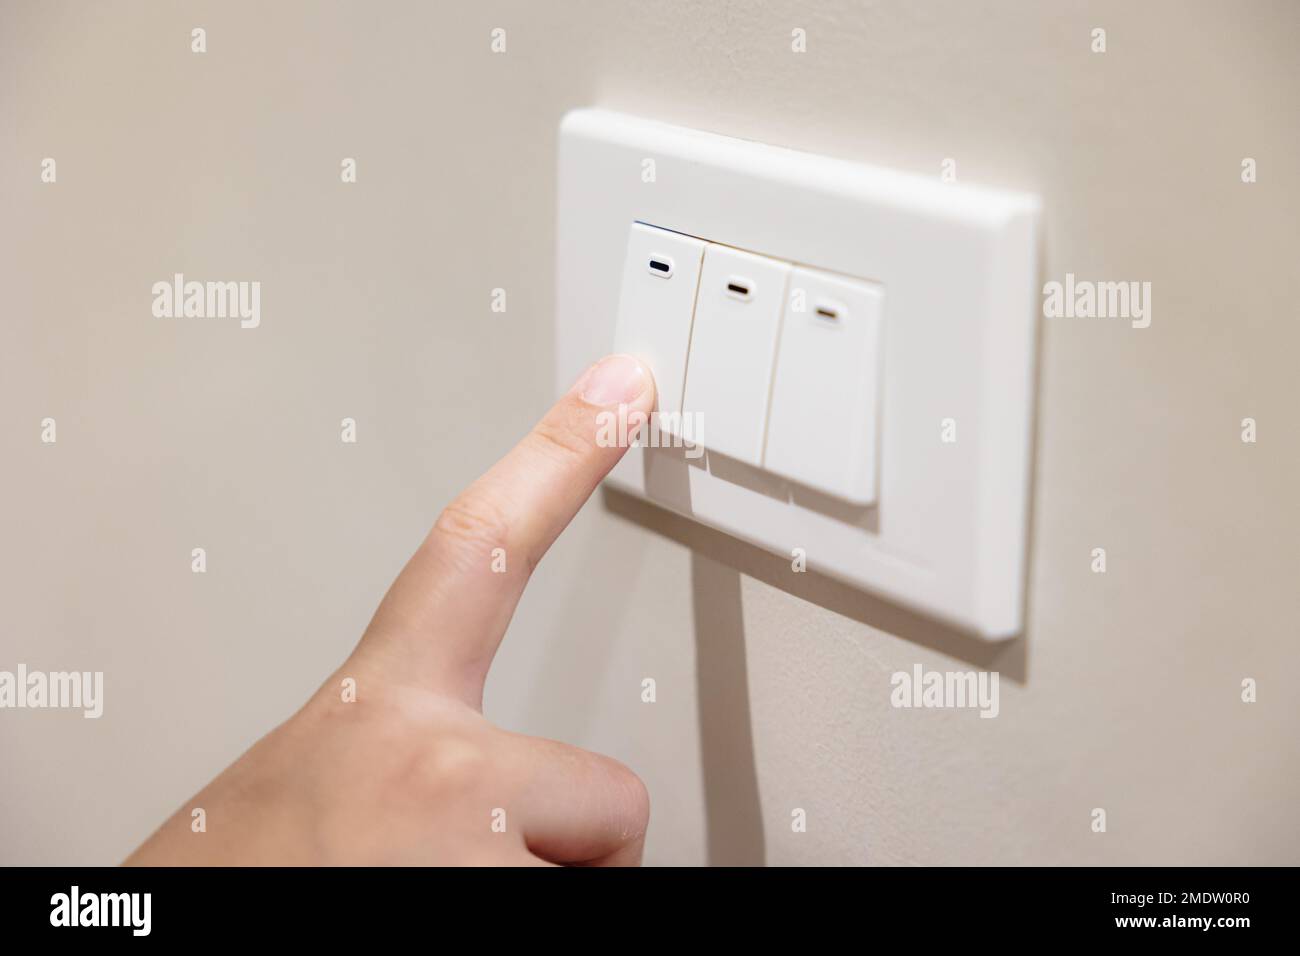 le persone premono l'interruttore della luce per spegnere la luce per risparmiare energia a casa ridurre i costi di fatturazione delle utenze Foto Stock